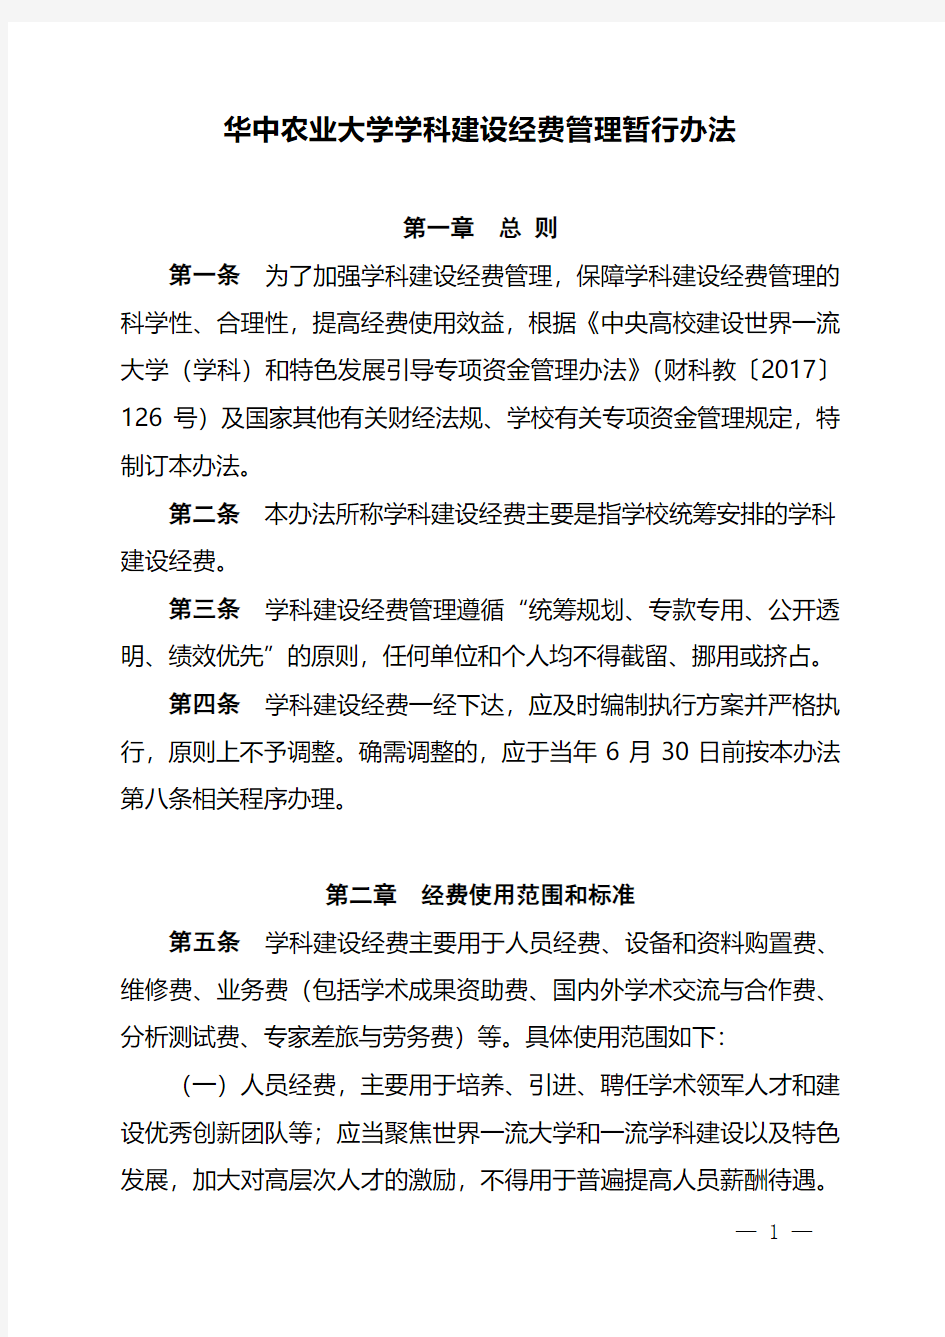 华中农业大学学科建设经费管理暂行办法